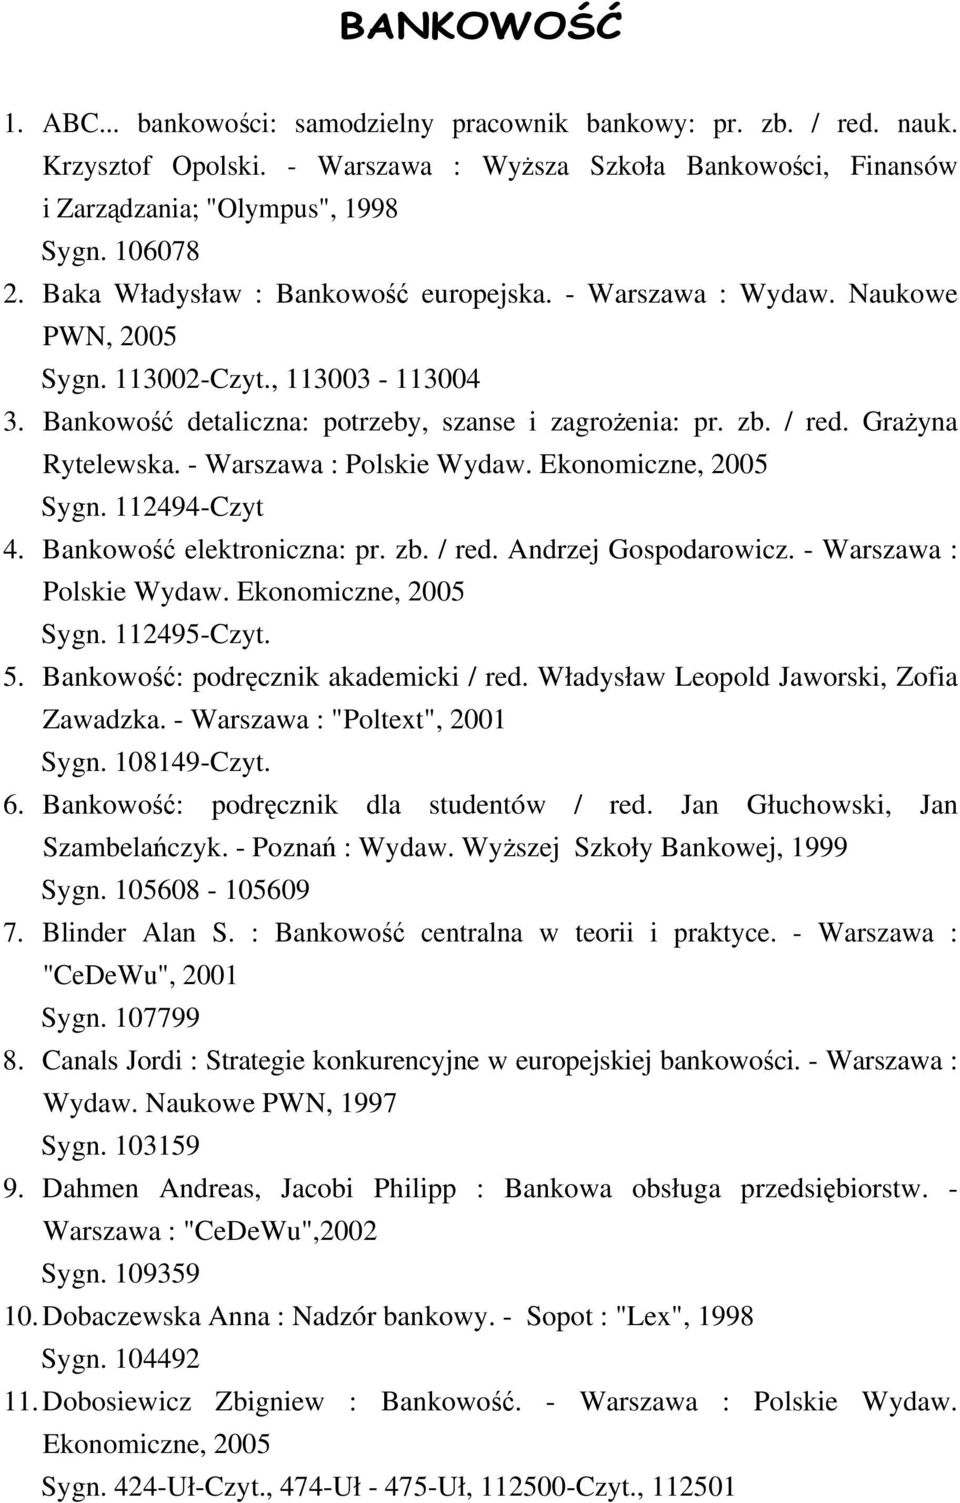 Grażyna Rytelewska. - Warszawa : Polskie Wydaw. Ekonomiczne, 2005 Sygn. 112494-Czyt 4. Bankowość elektroniczna: pr. zb. / red. Andrzej Gospodarowicz. - Warszawa : Polskie Wydaw. Ekonomiczne, 2005 Sygn. 112495-Czyt.